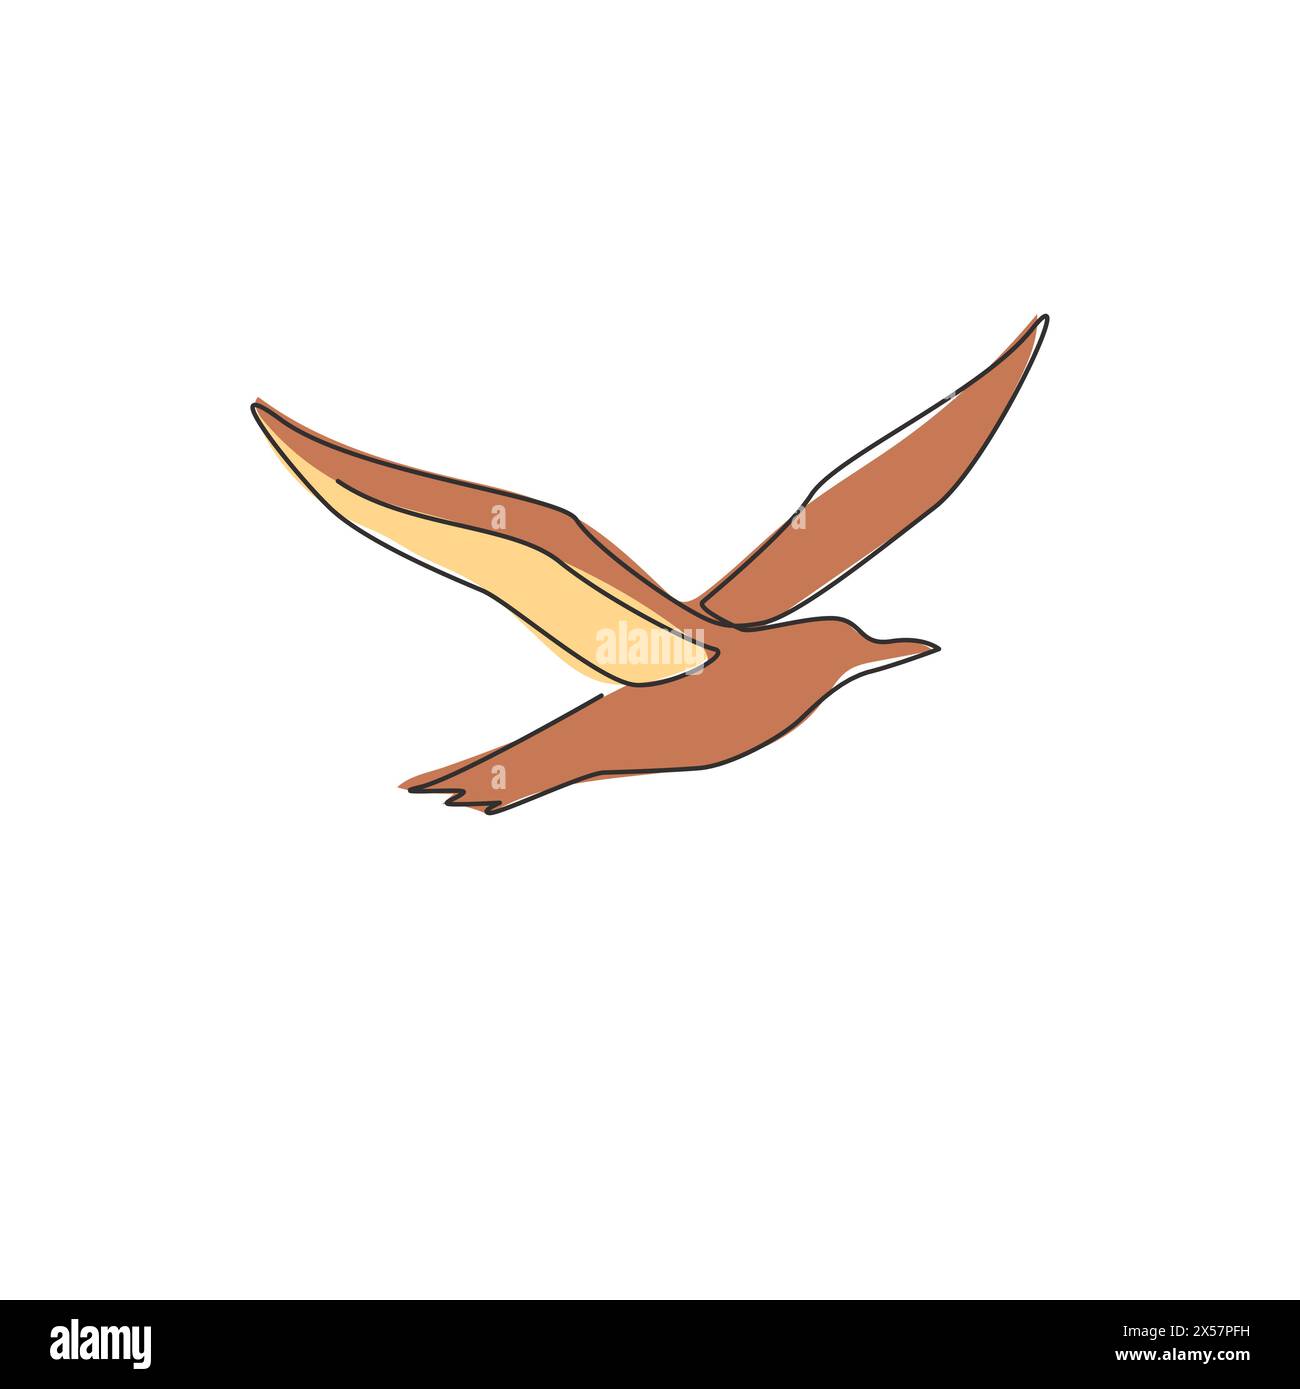 Un dessin en ligne continue d'albatros mignon pour l'identité du logo de conservation des oiseaux. Adorable concept de mascotte d'oiseau de mer pour icône de zoo national. Sin dynamique Illustration de Vecteur